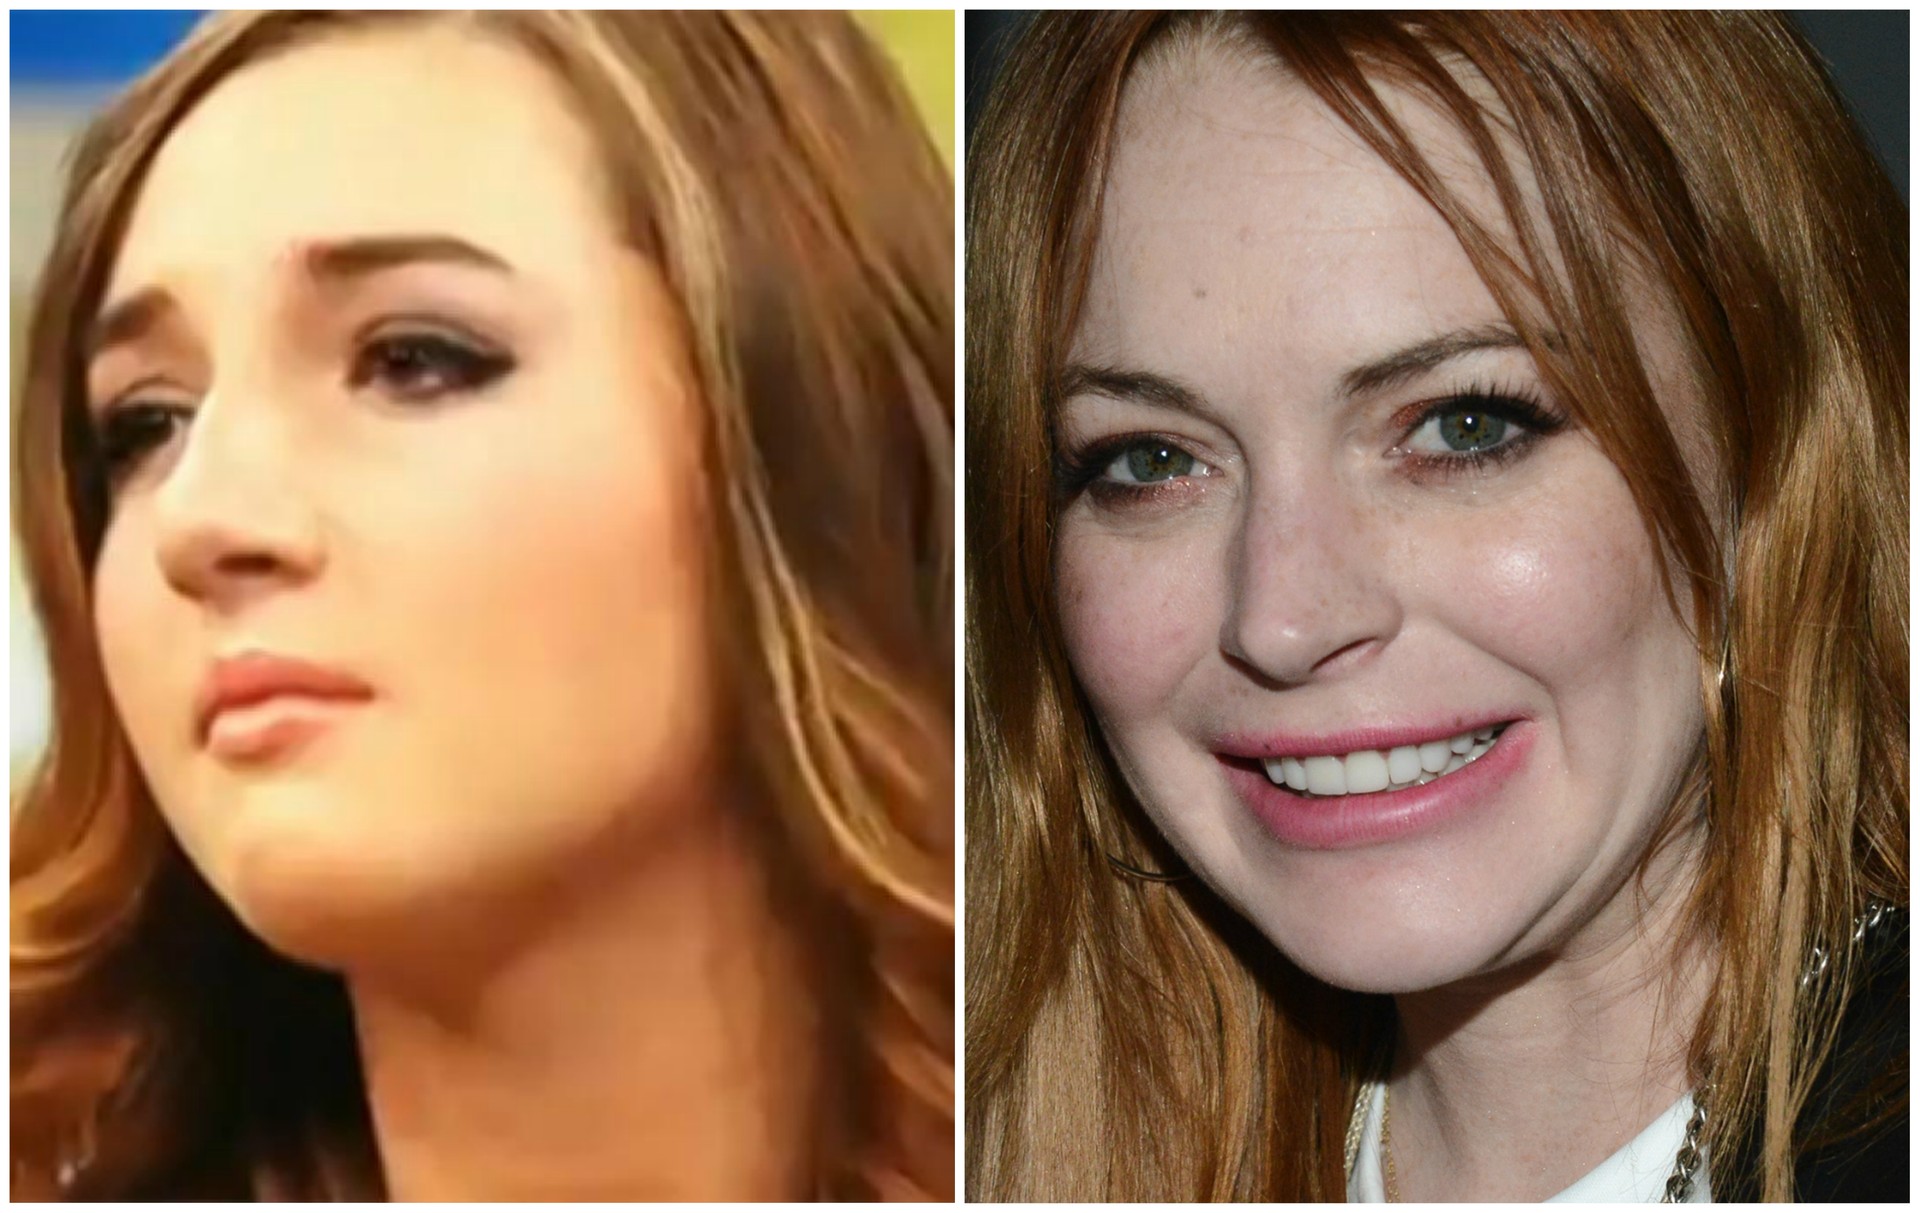 Ashley Horn, meia-irmã de Lindsay Lohan, investiu 25 mil dólares (56 mil reais) só para se parecer mais com... Lindsay Lohan. (Foto: Reprodução e Getty Images)